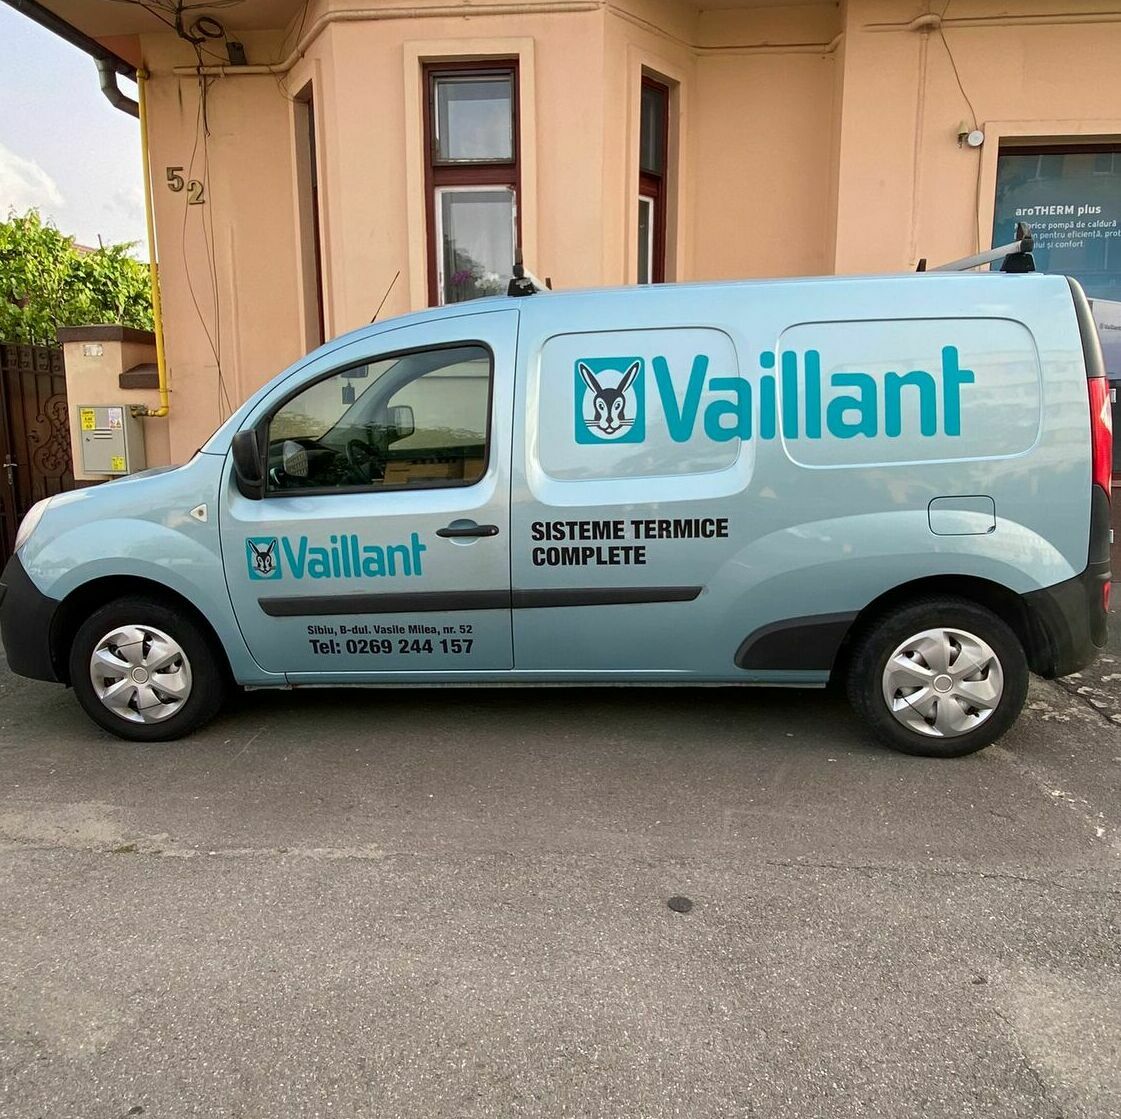 Inscriptionarea auto pentru firma Vaillant, asigurând o prezentare profesională și uniformă a brandului pe vehiculele sale.